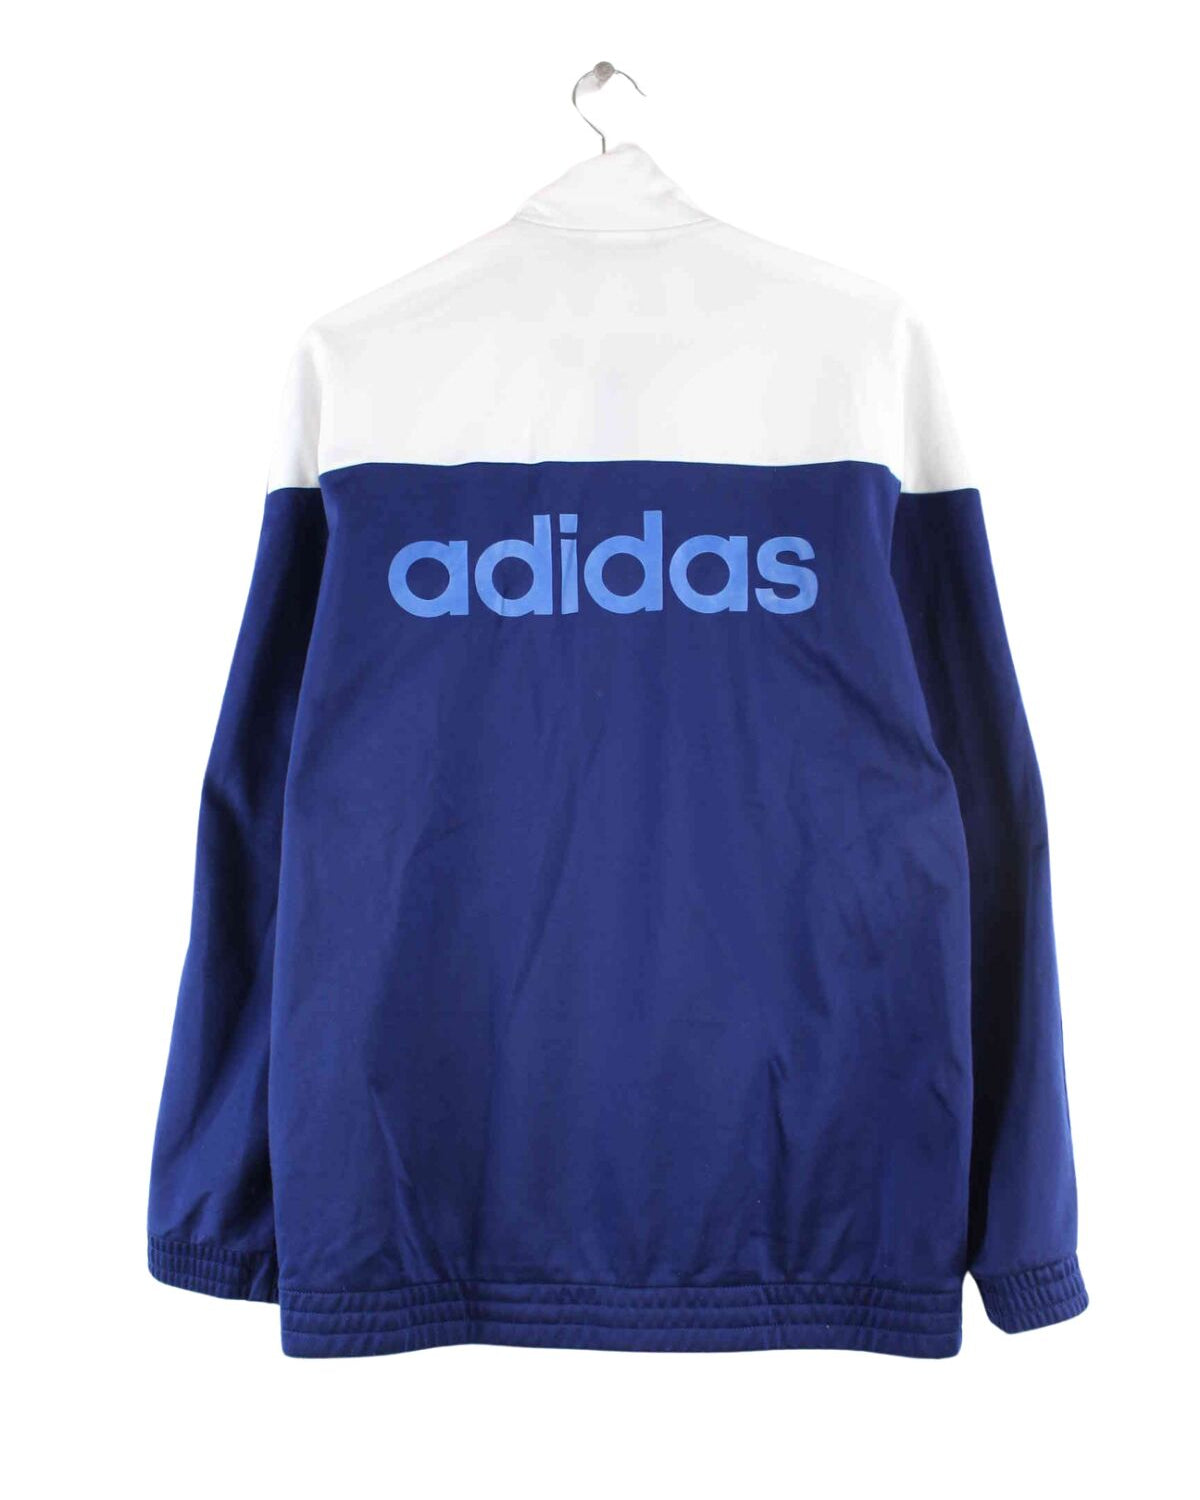 Adidas Print Trainingsjacke Blau L (back image)